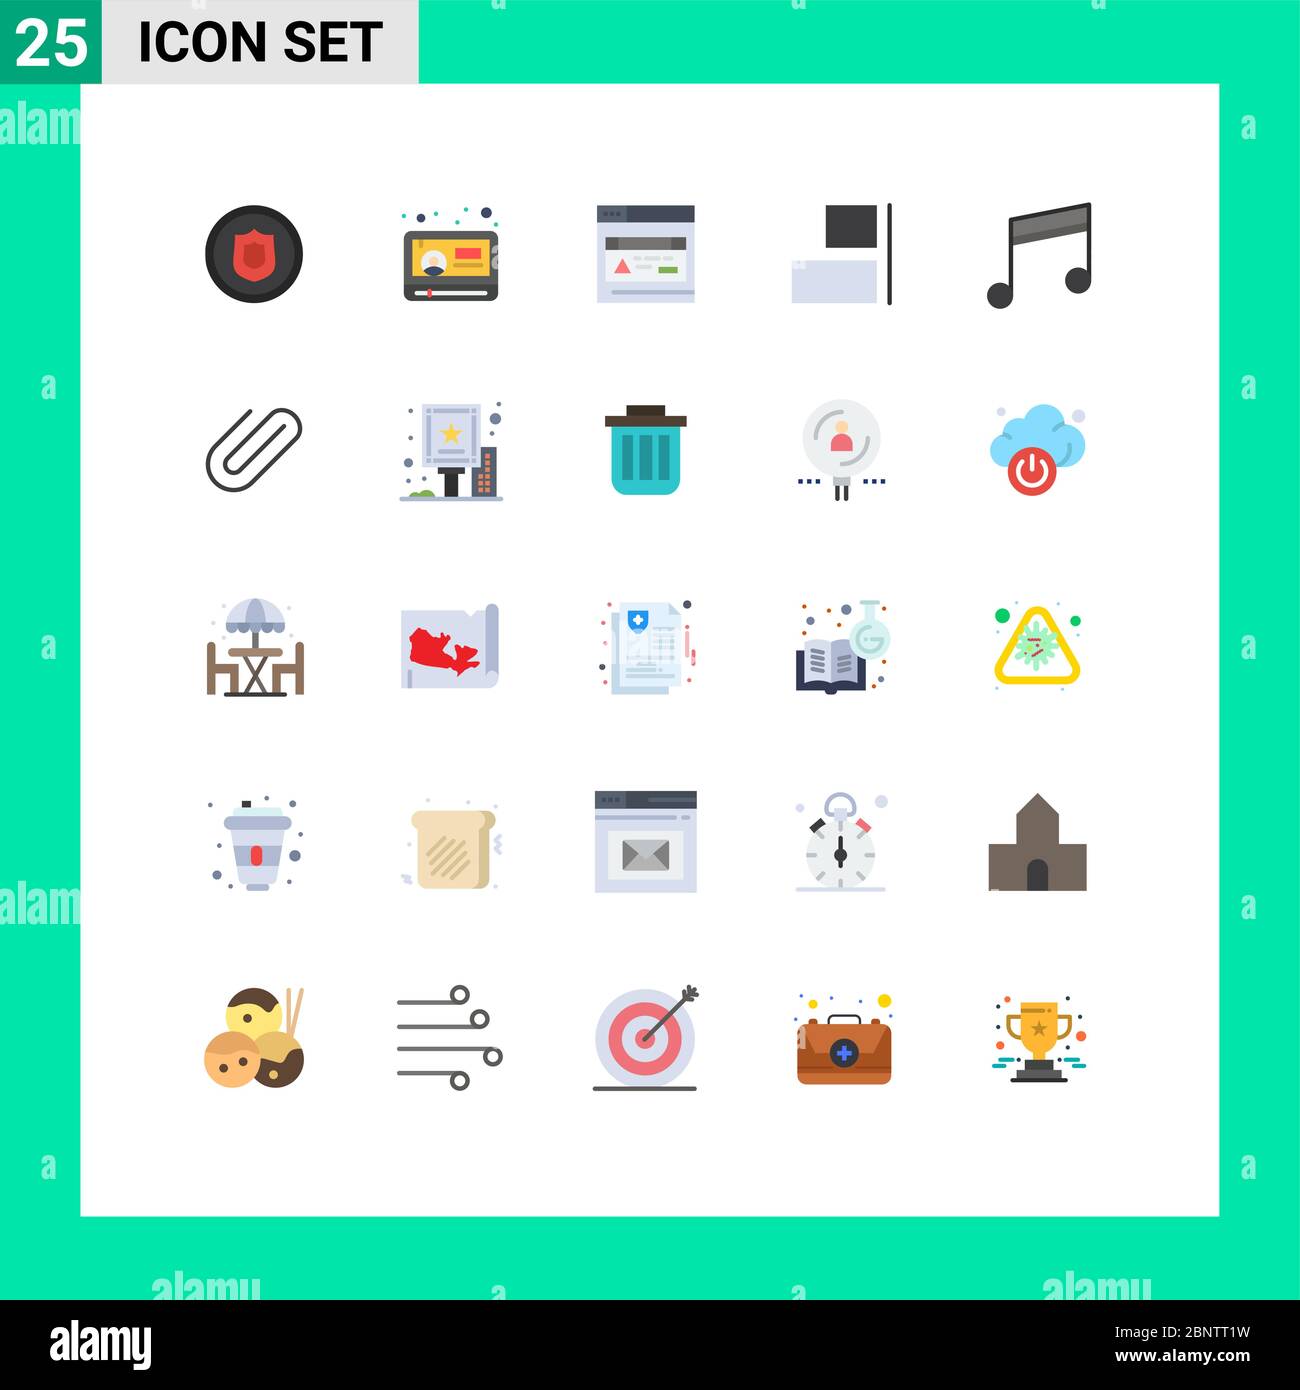 Set di 25 icone moderne dell'interfaccia utente simboli per canzoni, supporti, interfaccia, album, elementi di disegno vettoriale modificabili in orizzontale Illustrazione Vettoriale